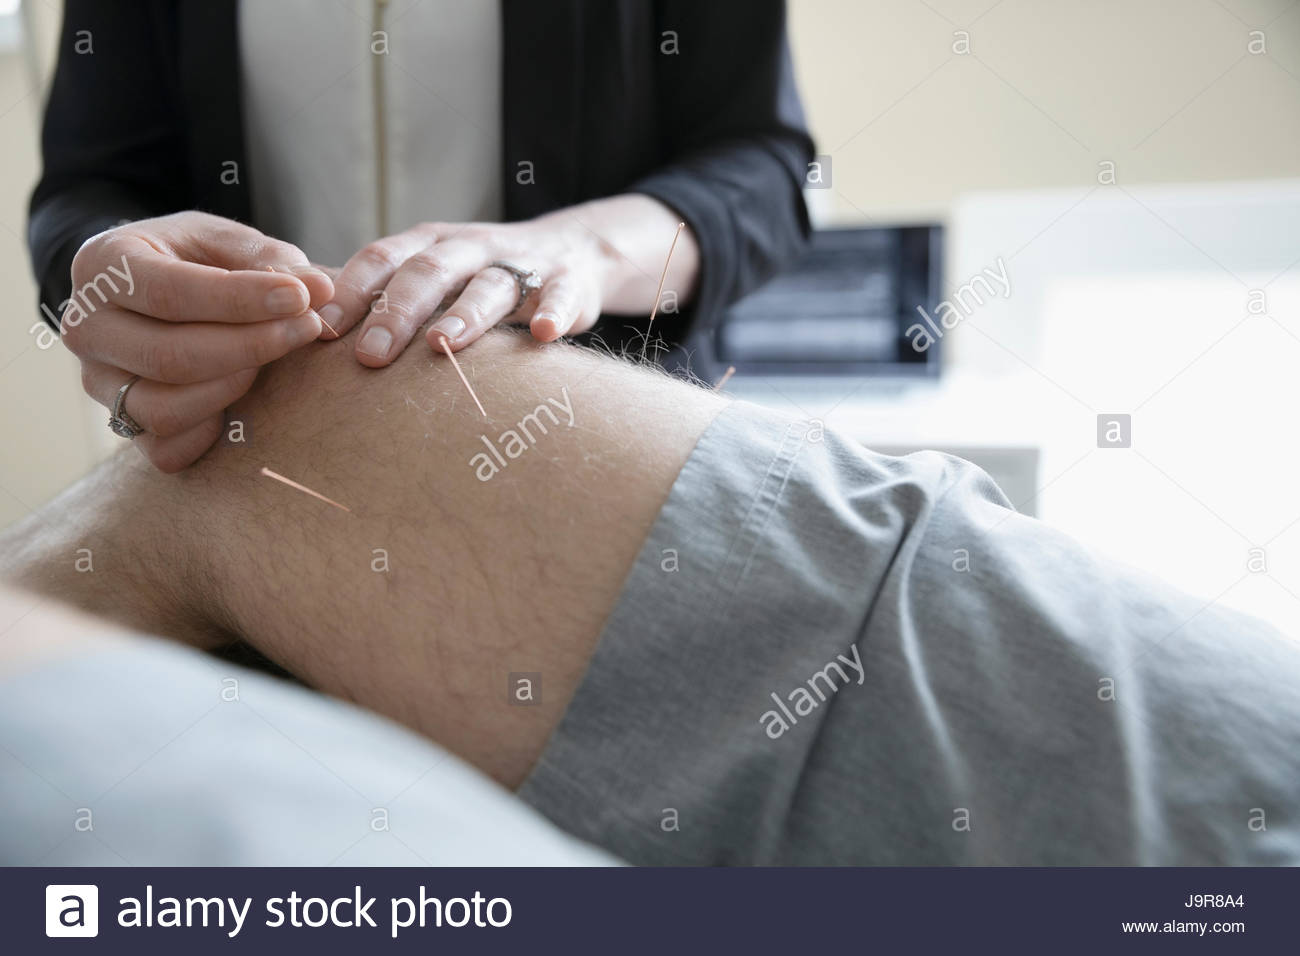 L'insertion d'aiguilles dans acupuncteur femelle de l'homme au genou sur table d'examen clinique Banque D'Images